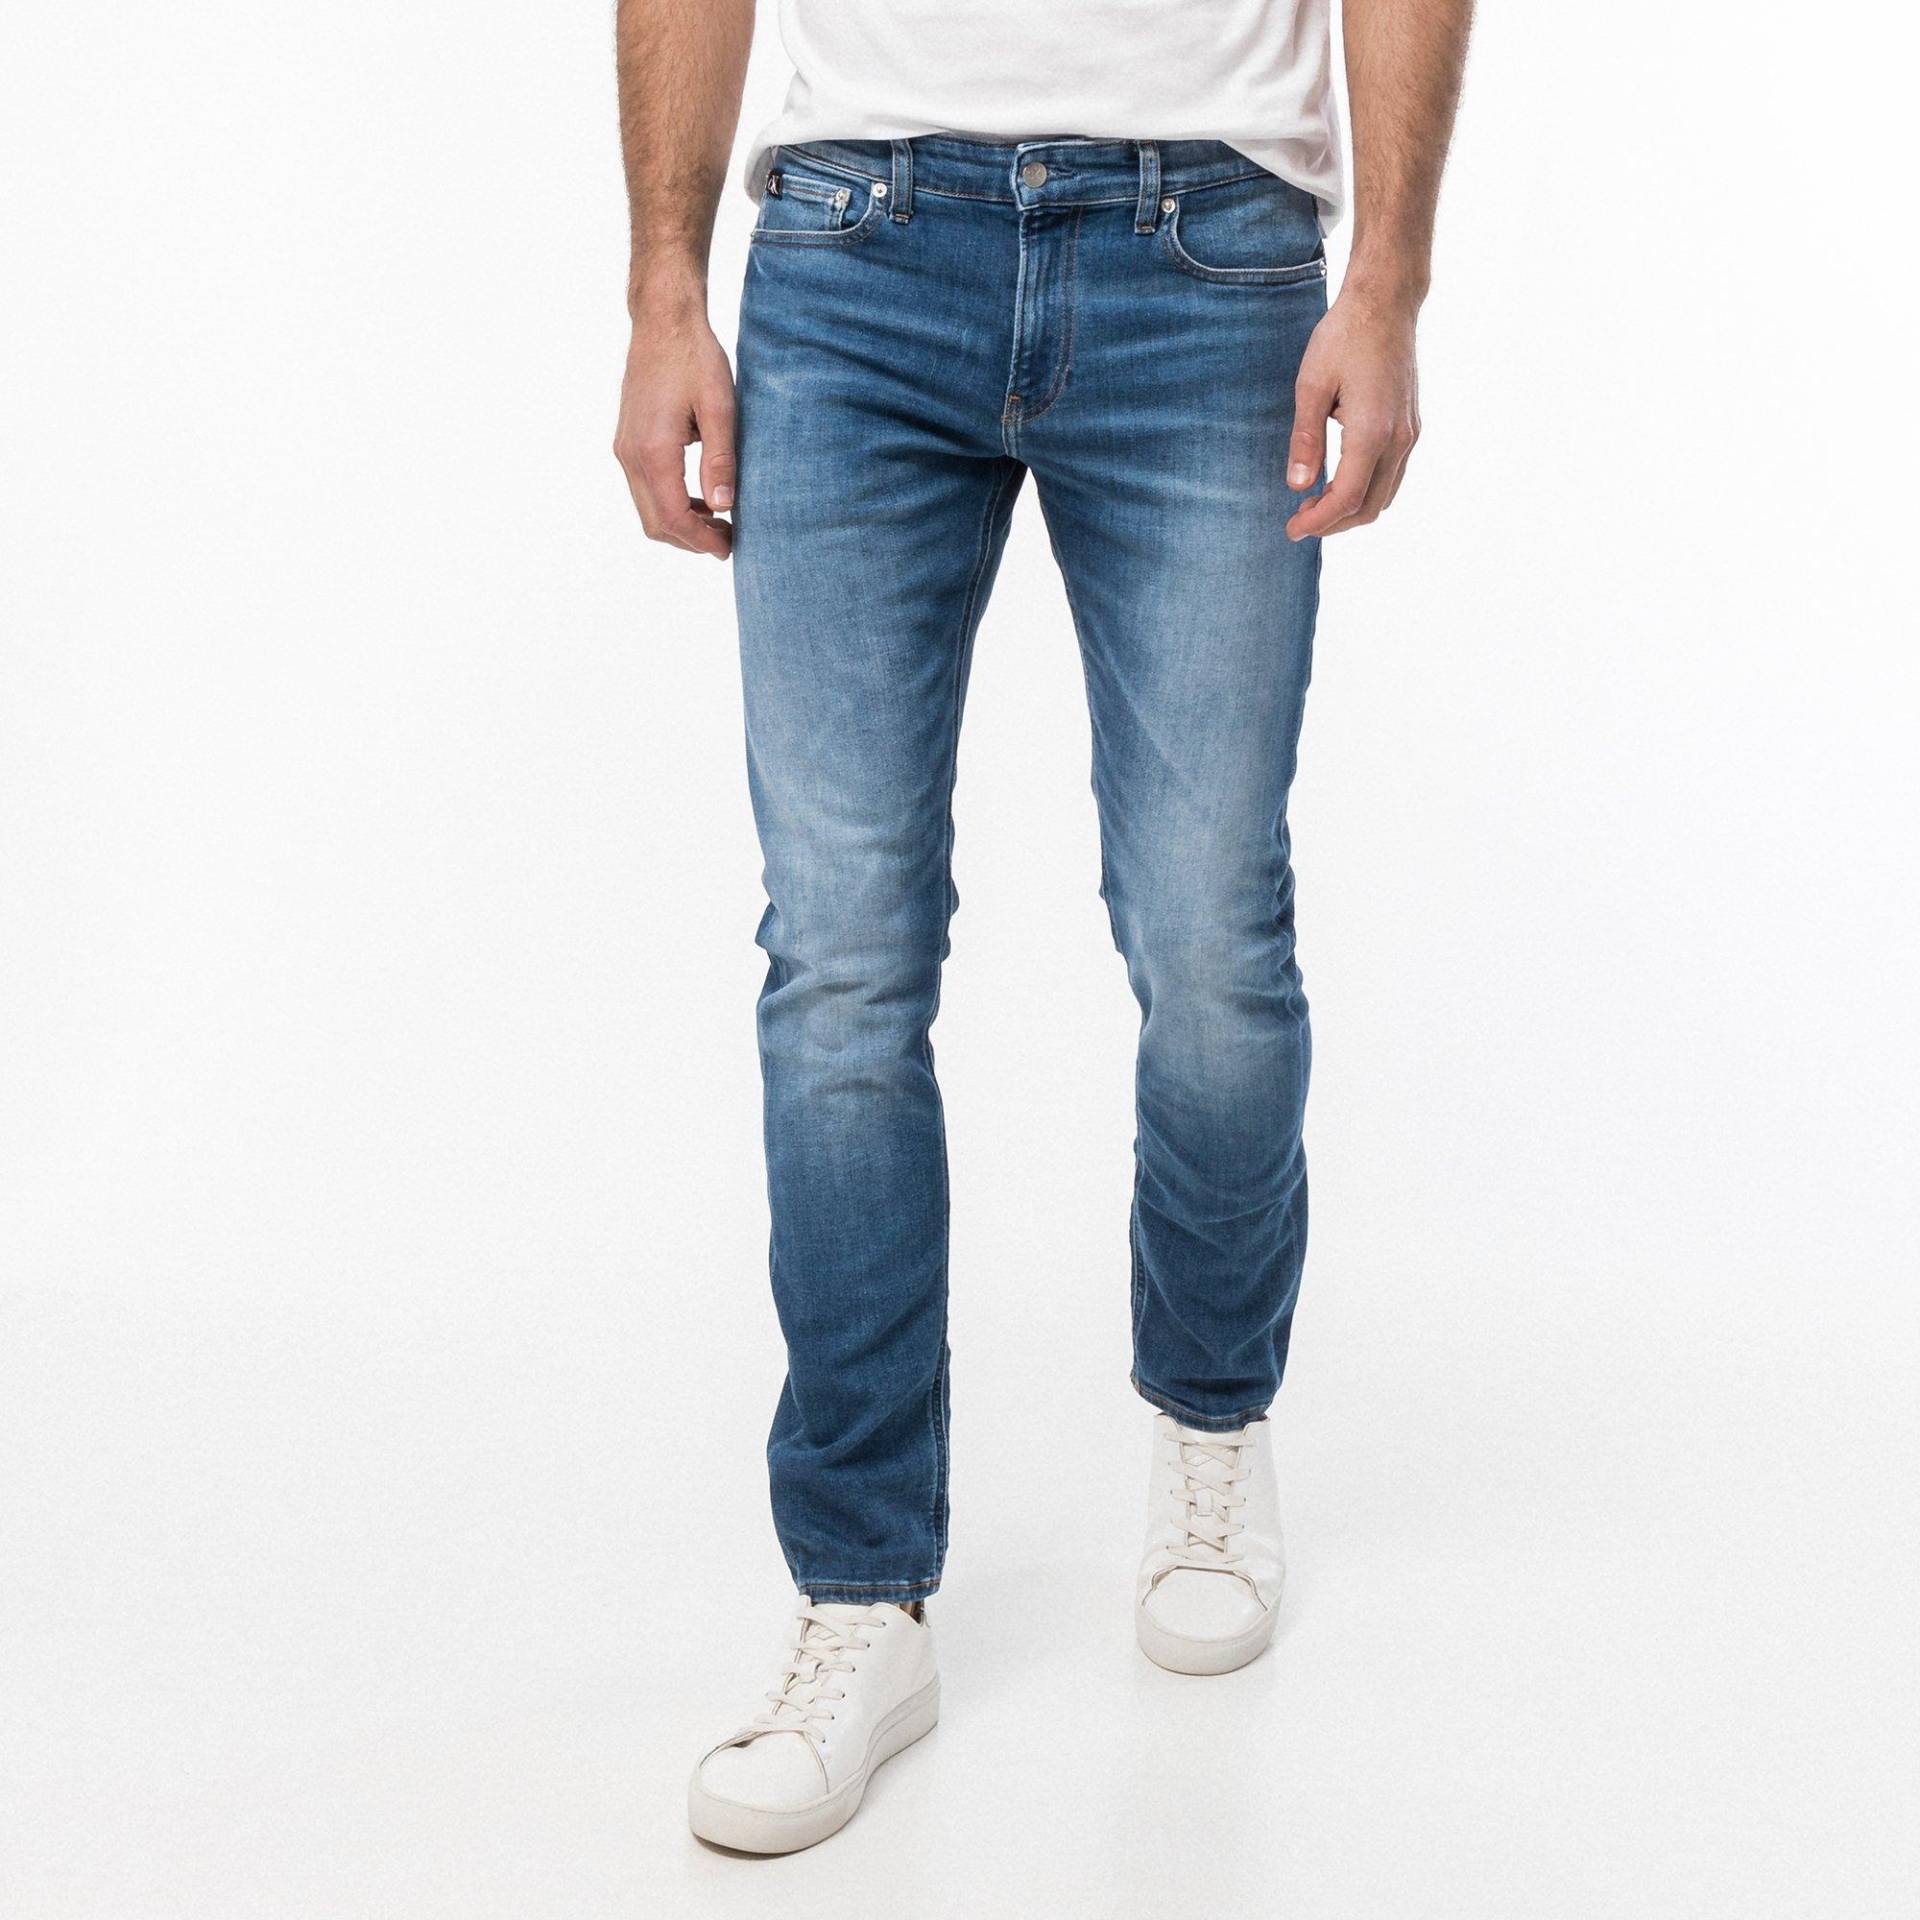 Jeans, Slim Fit Herren Blau L30/W33 von Calvin Klein Jeans